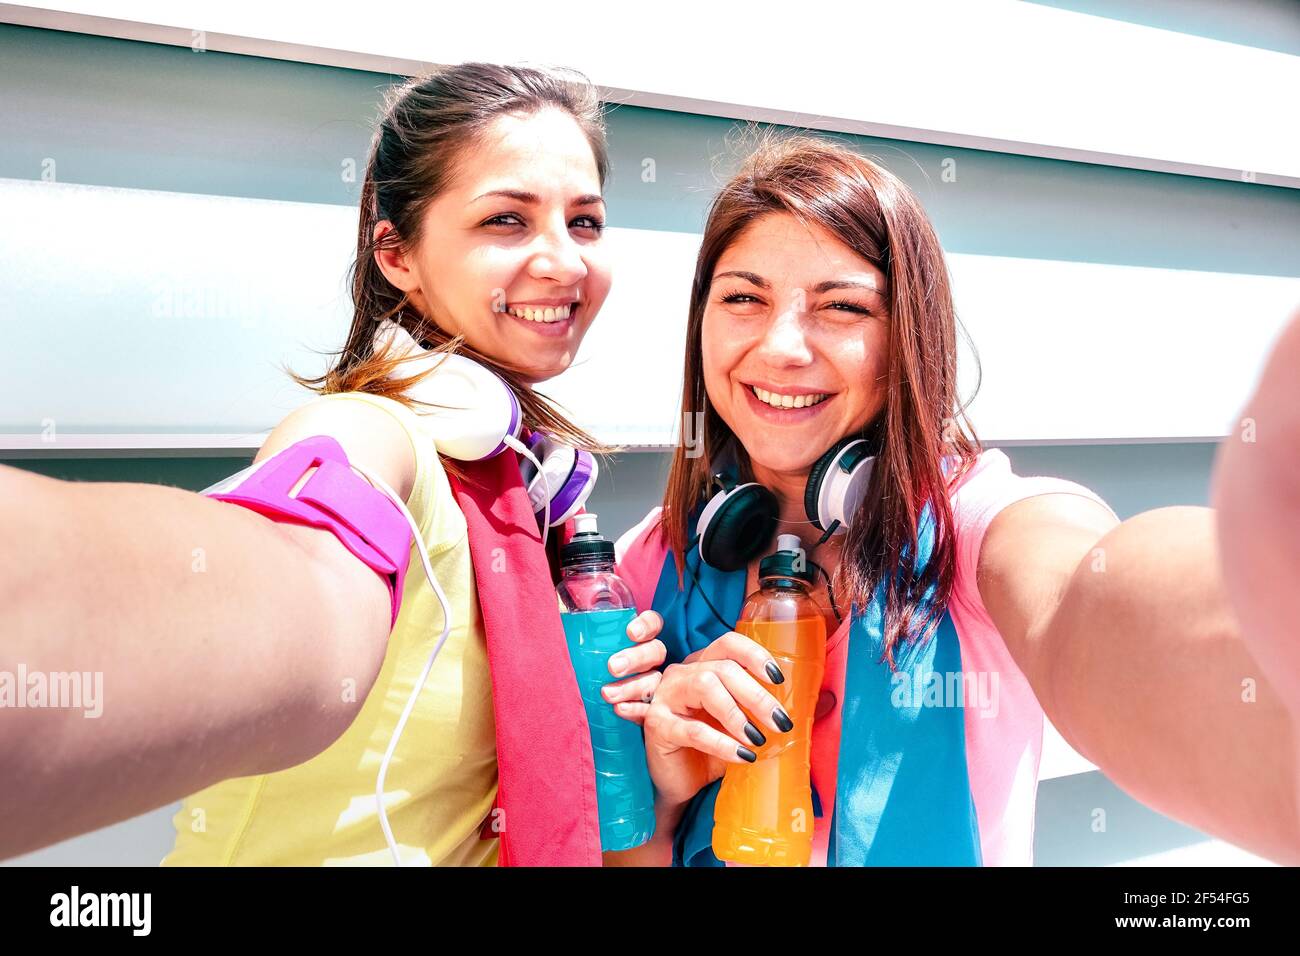 Glückliche Freundinnen nehmen Selfie auf Pause beim Lauftraining in Urban Area - Junge glückliche Frauen mit Spaß zusammen Fitness Jogging Workout Stockfoto